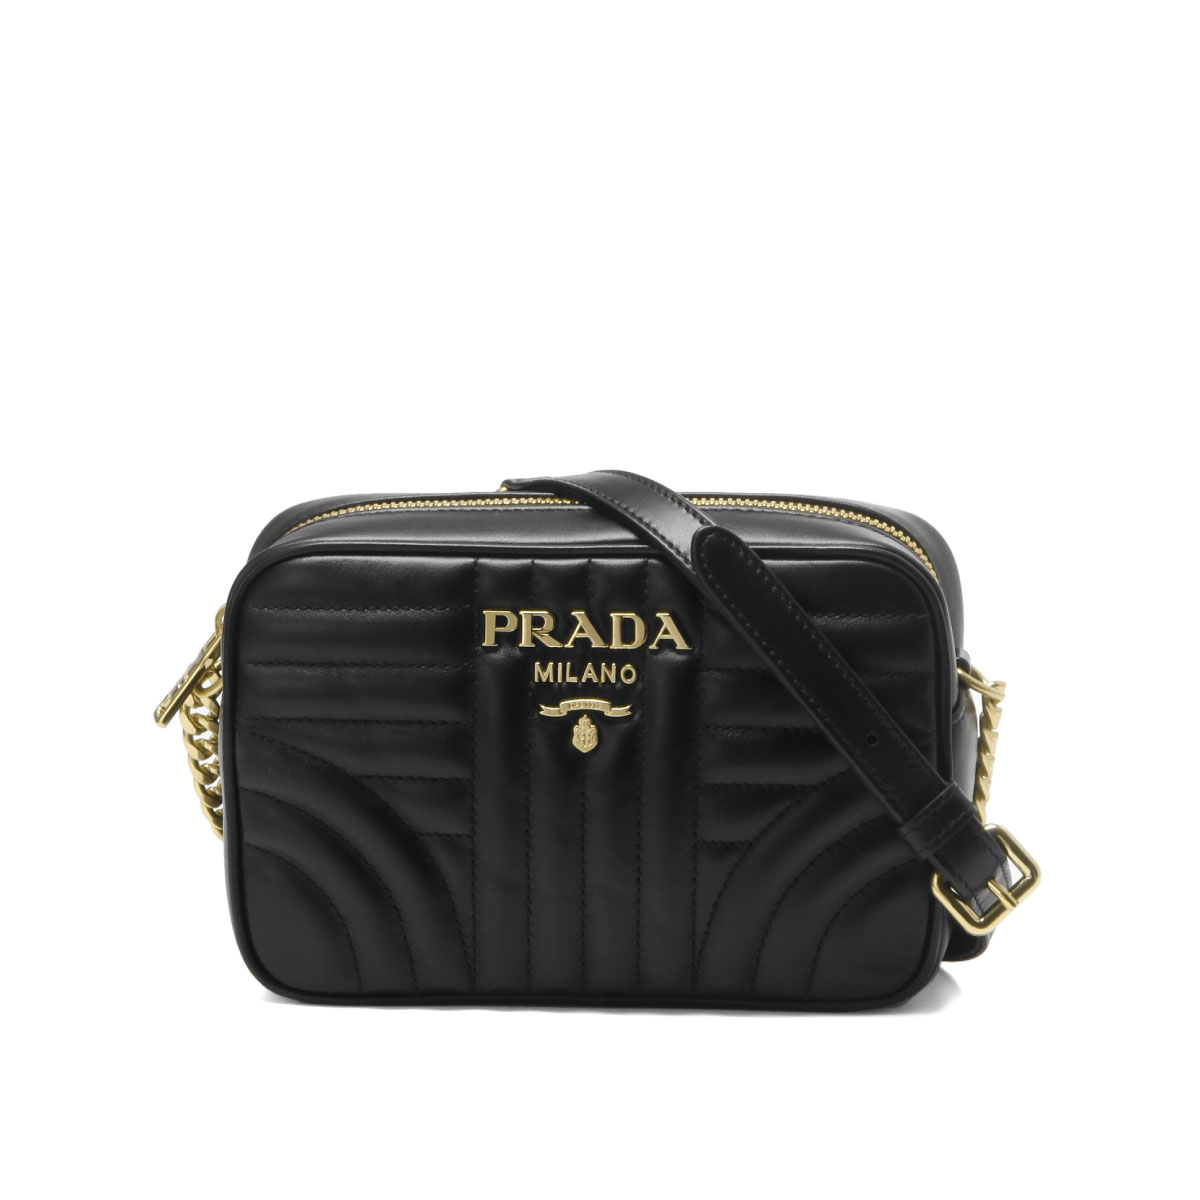 Importshopdouble Prada Prada Bag Lady 1bh084 2d91 F0632 Shoulder